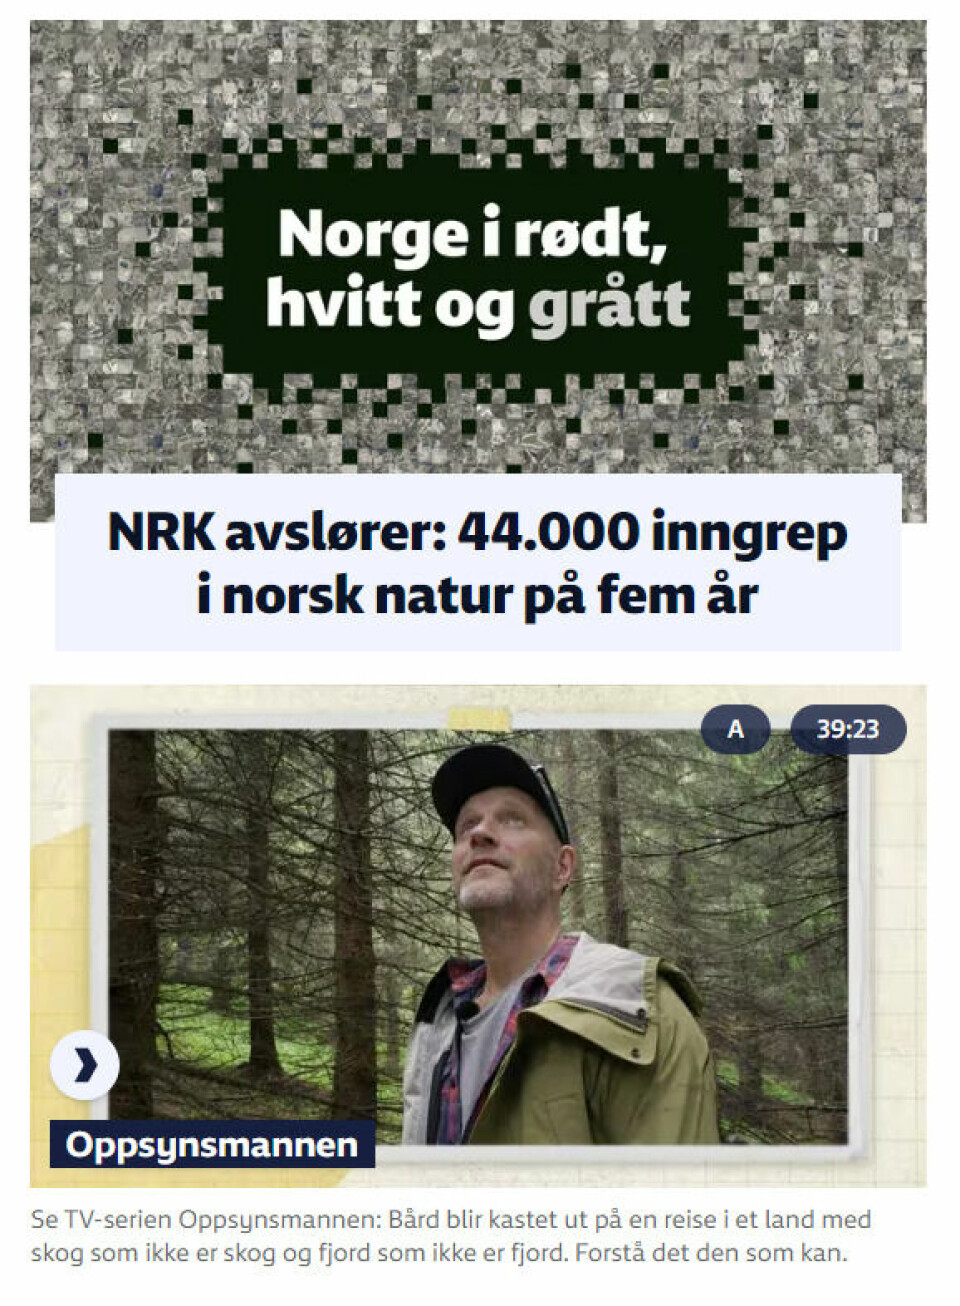 NRK publiserte nylig saken «Norge i rødt, hvitt og grått». Ved hjelp av kunstig intelligens har journalistene kartlagt og analysert over 40.000 satellittbilder av Norge og funnet ut hvor det er gjort reelle inngrep i naturen